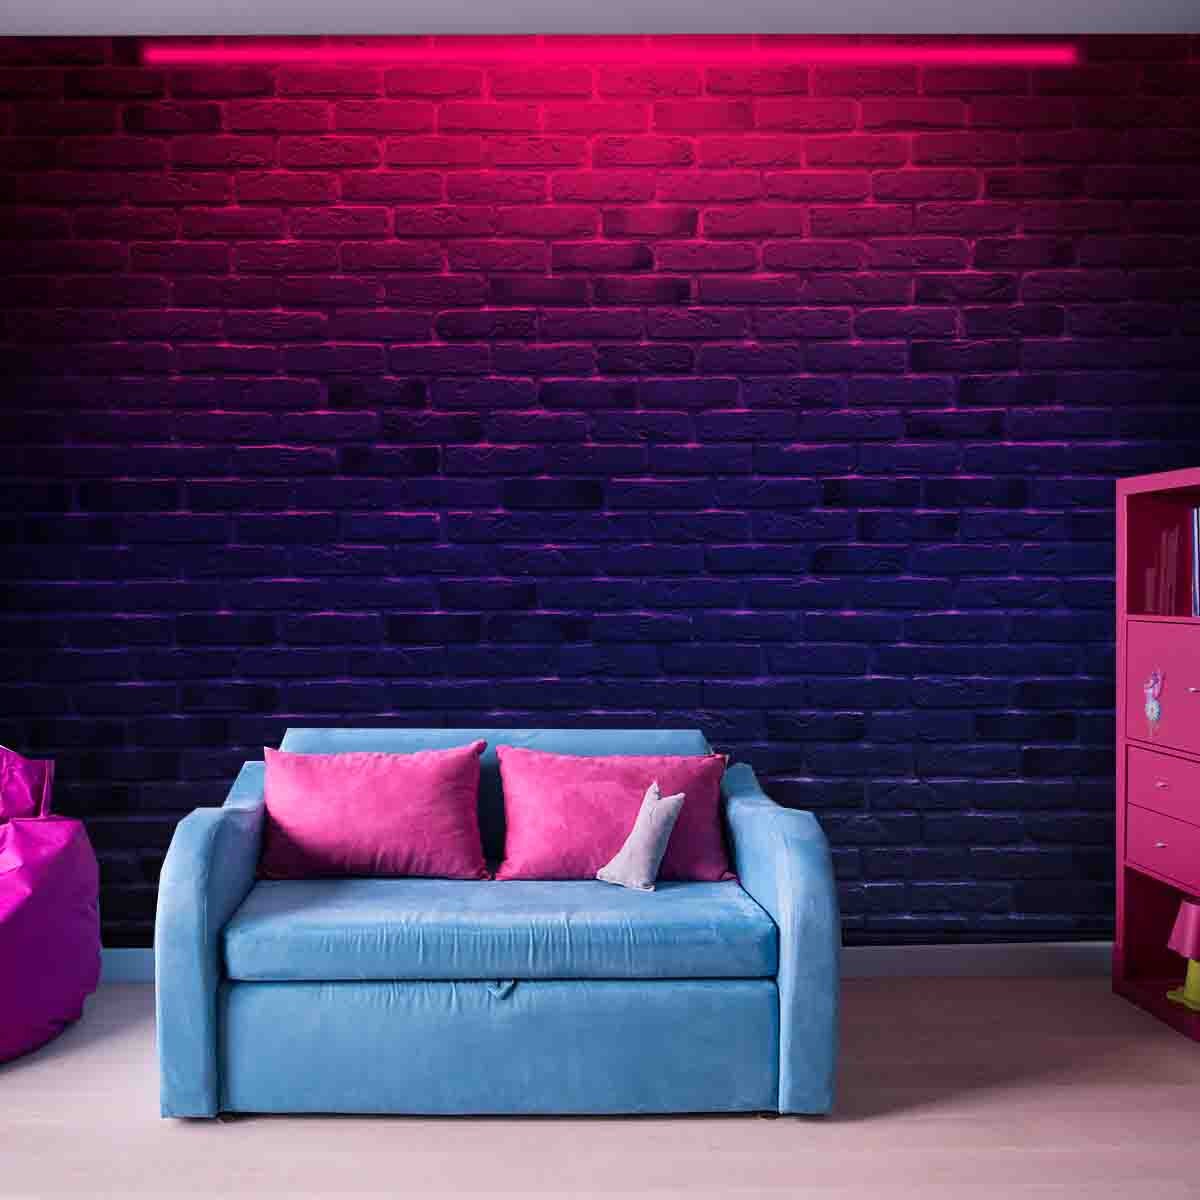 Brick Wall with Pink Neon Light Wallpaper Teen Girl Bedroom Mural